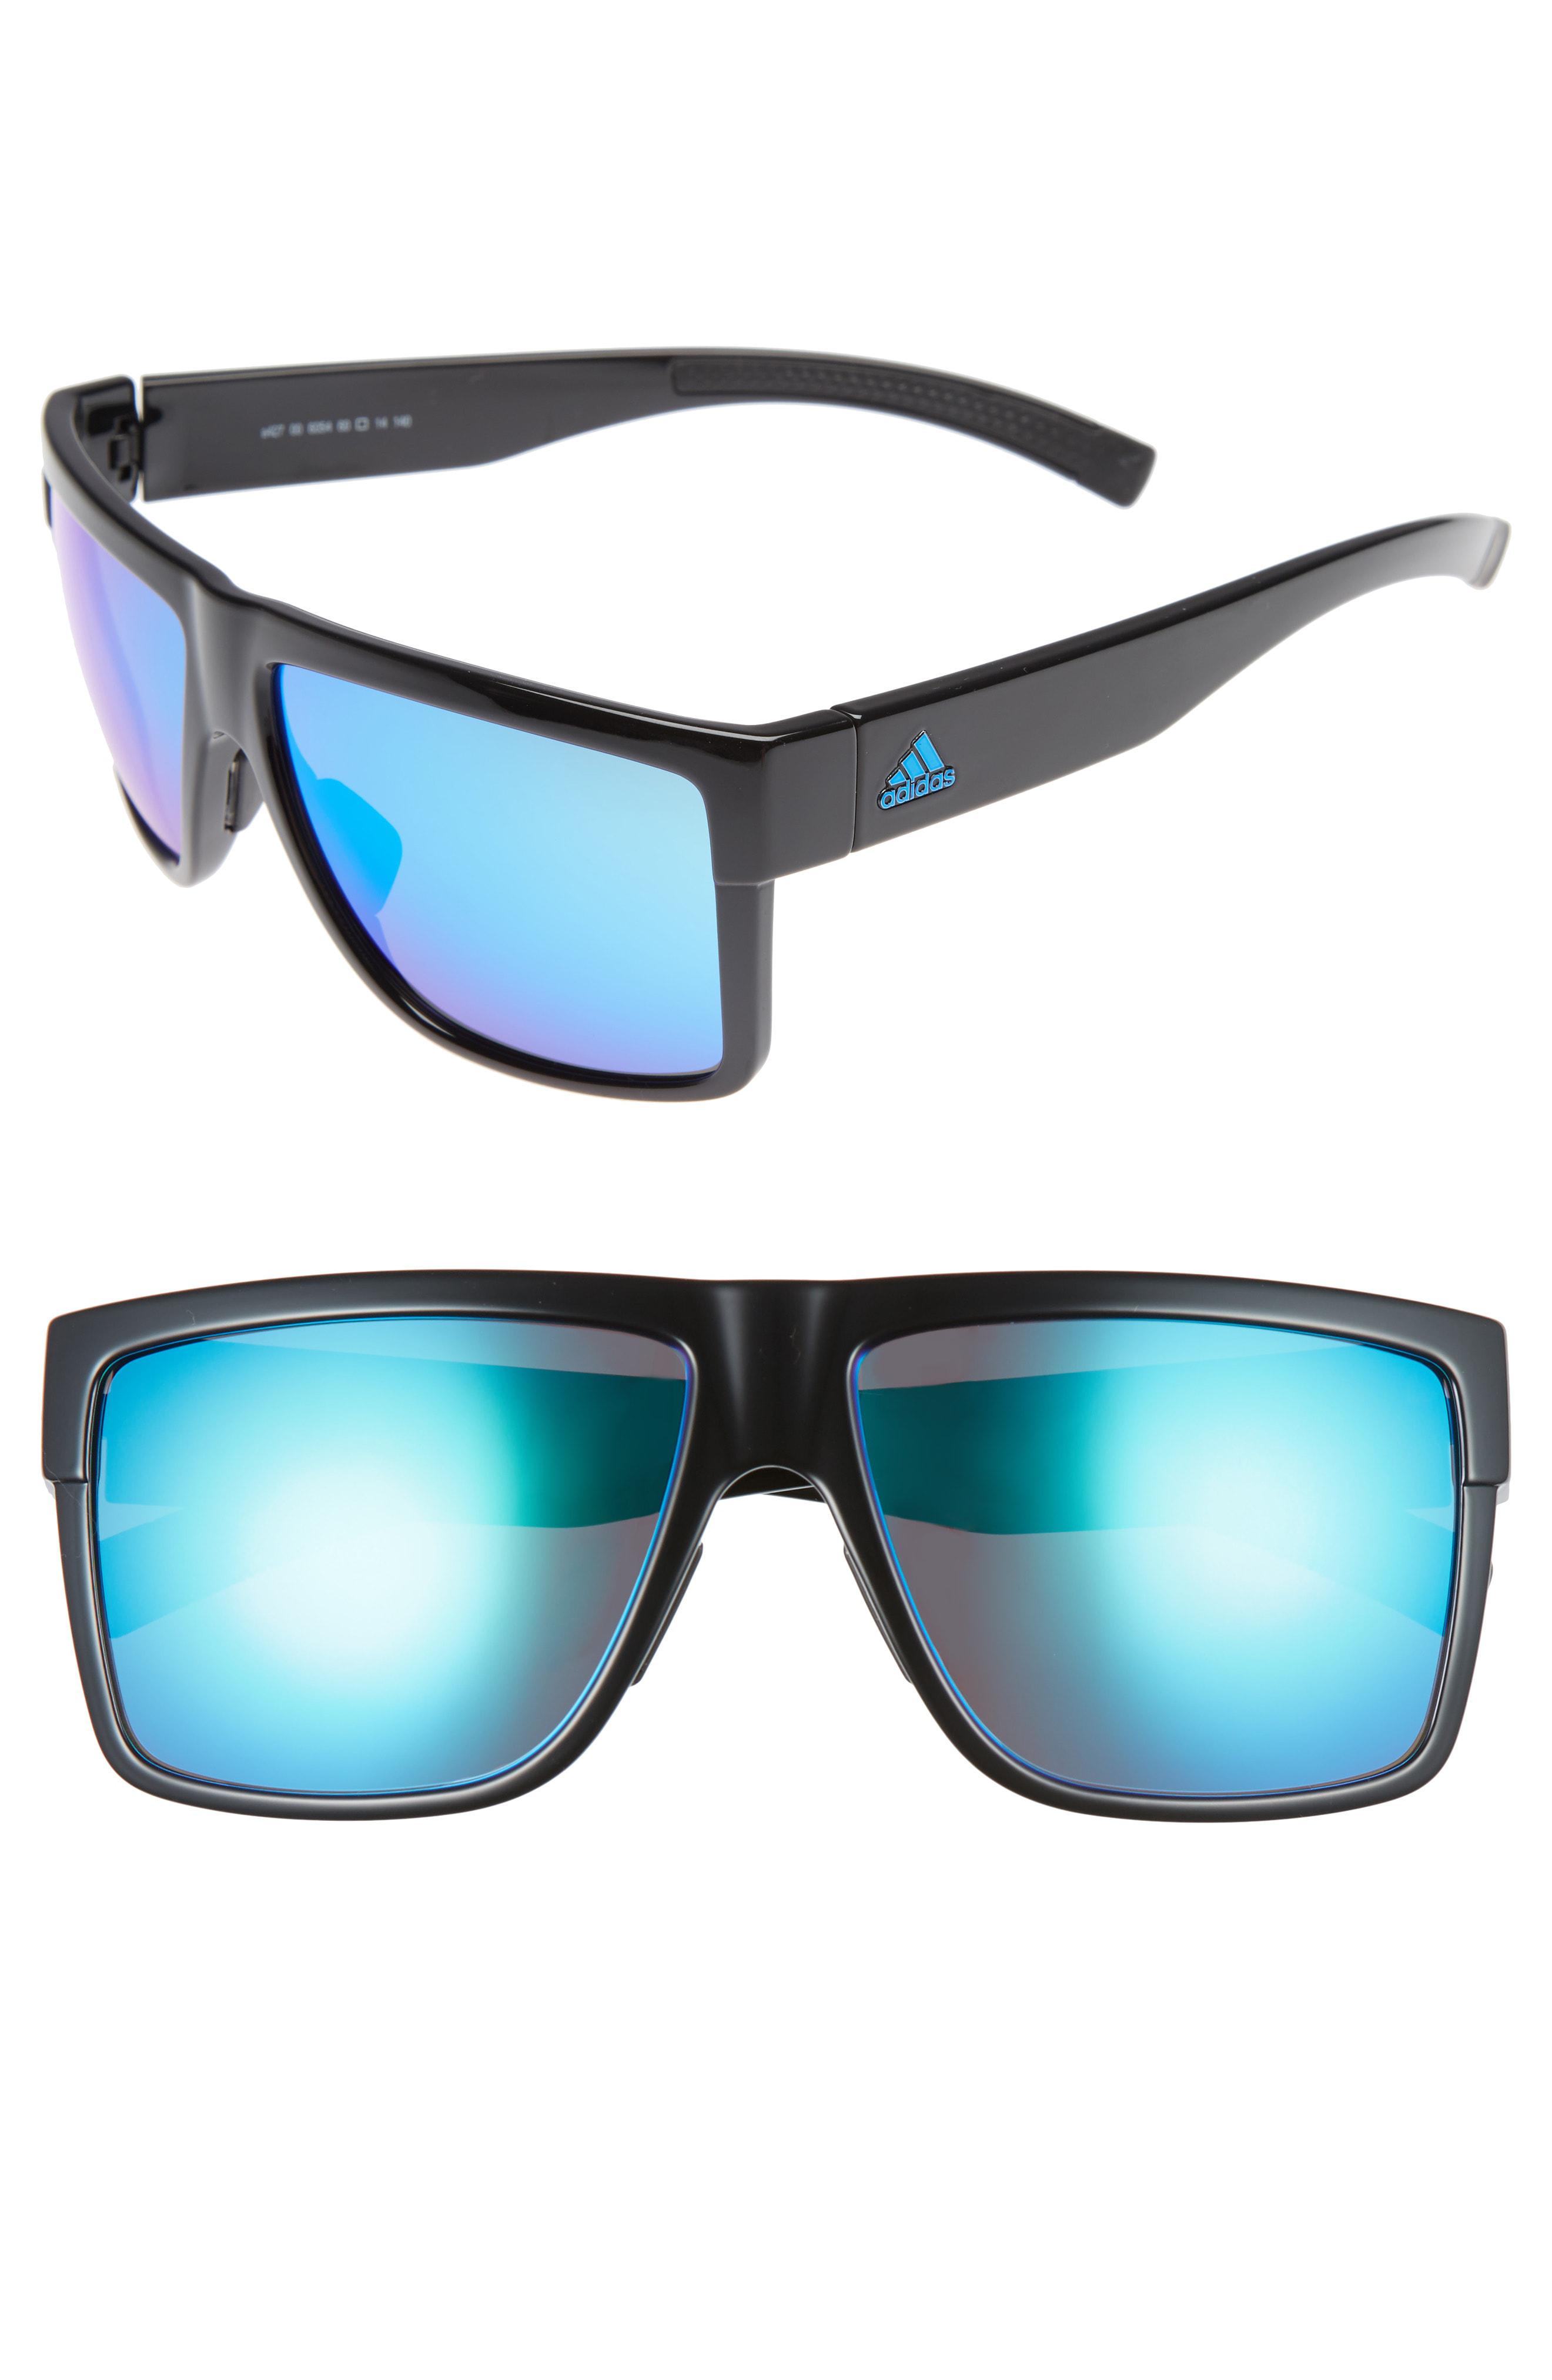 adidas 3matic sunglasses, Off 64%, www.spotsclick.com